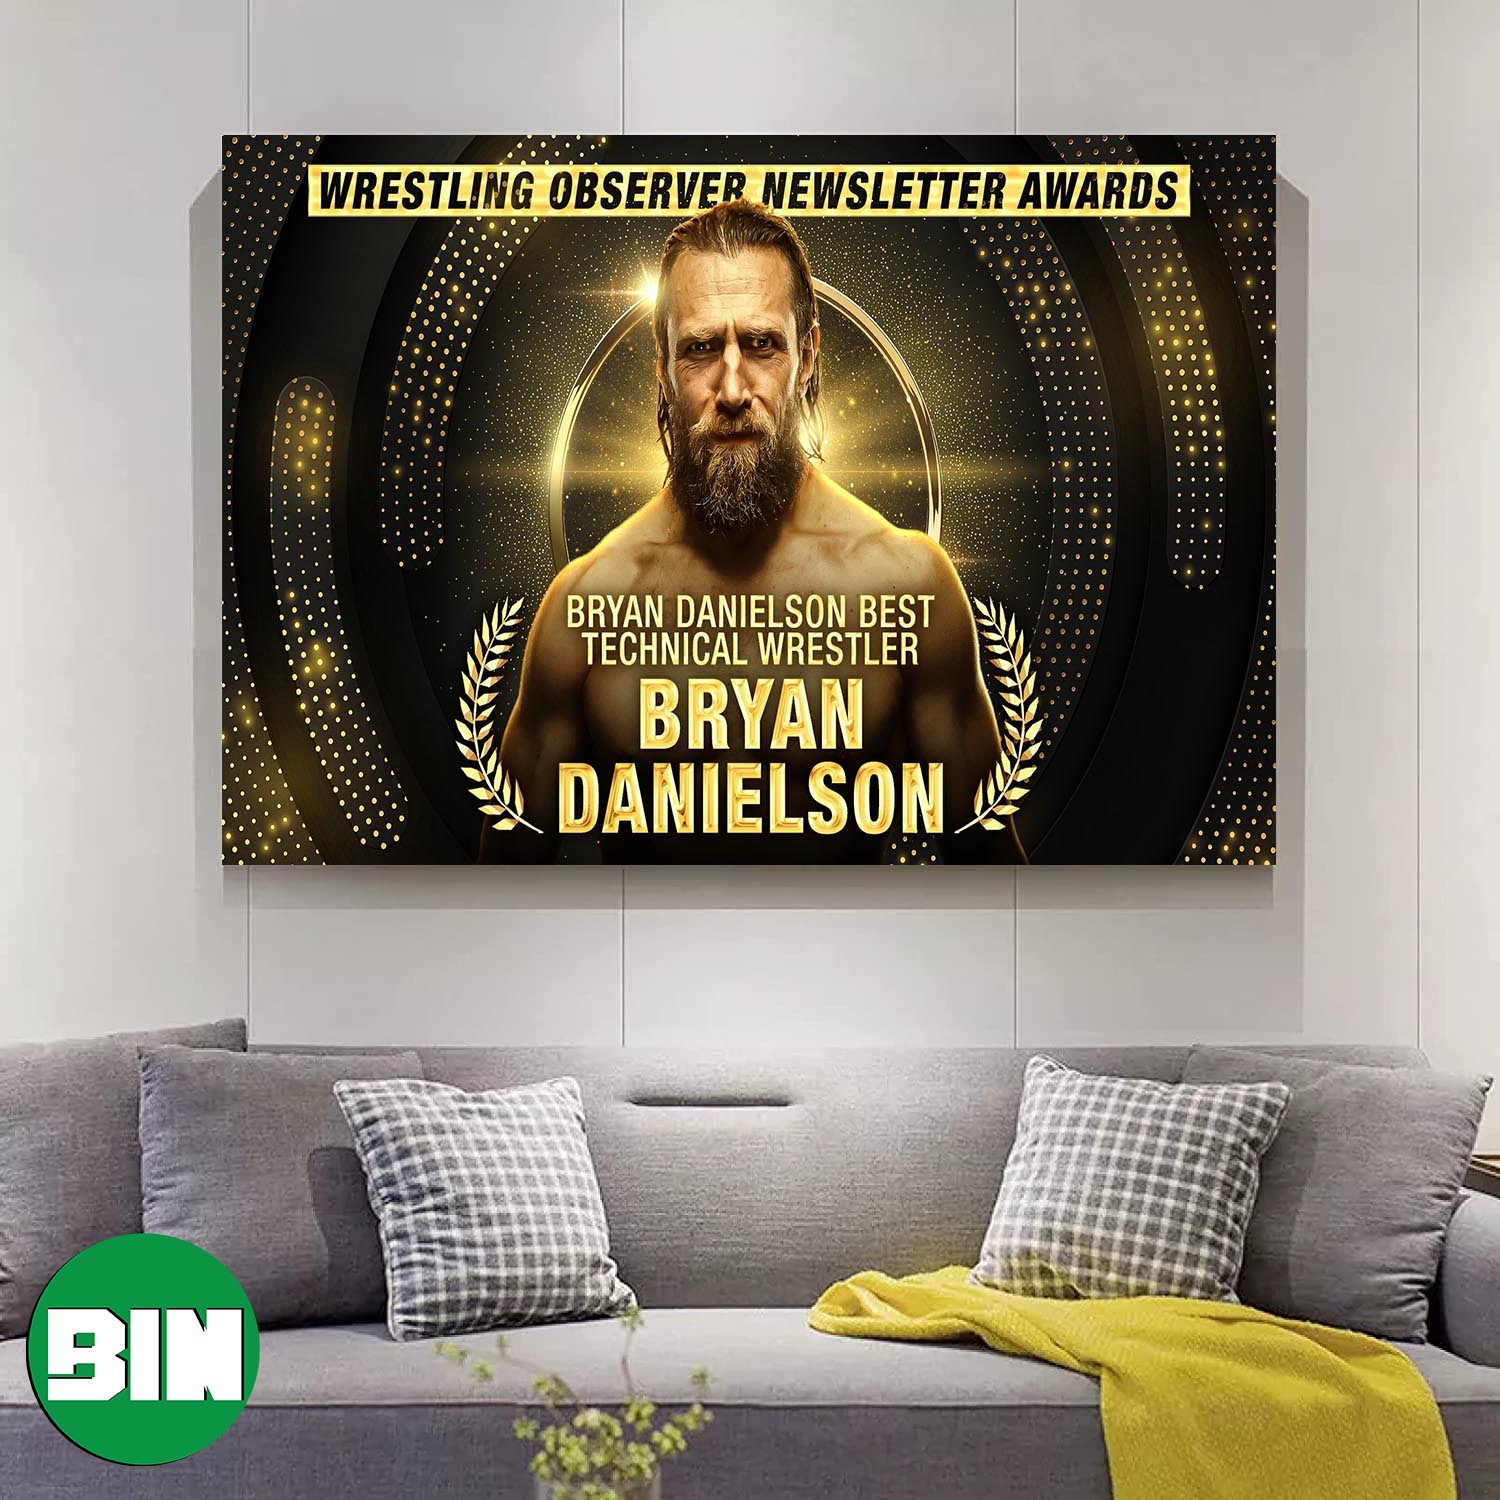 Wrestling Observer Newsletter Awards Bryan Danielson Best Technical Wrestler Aew poster